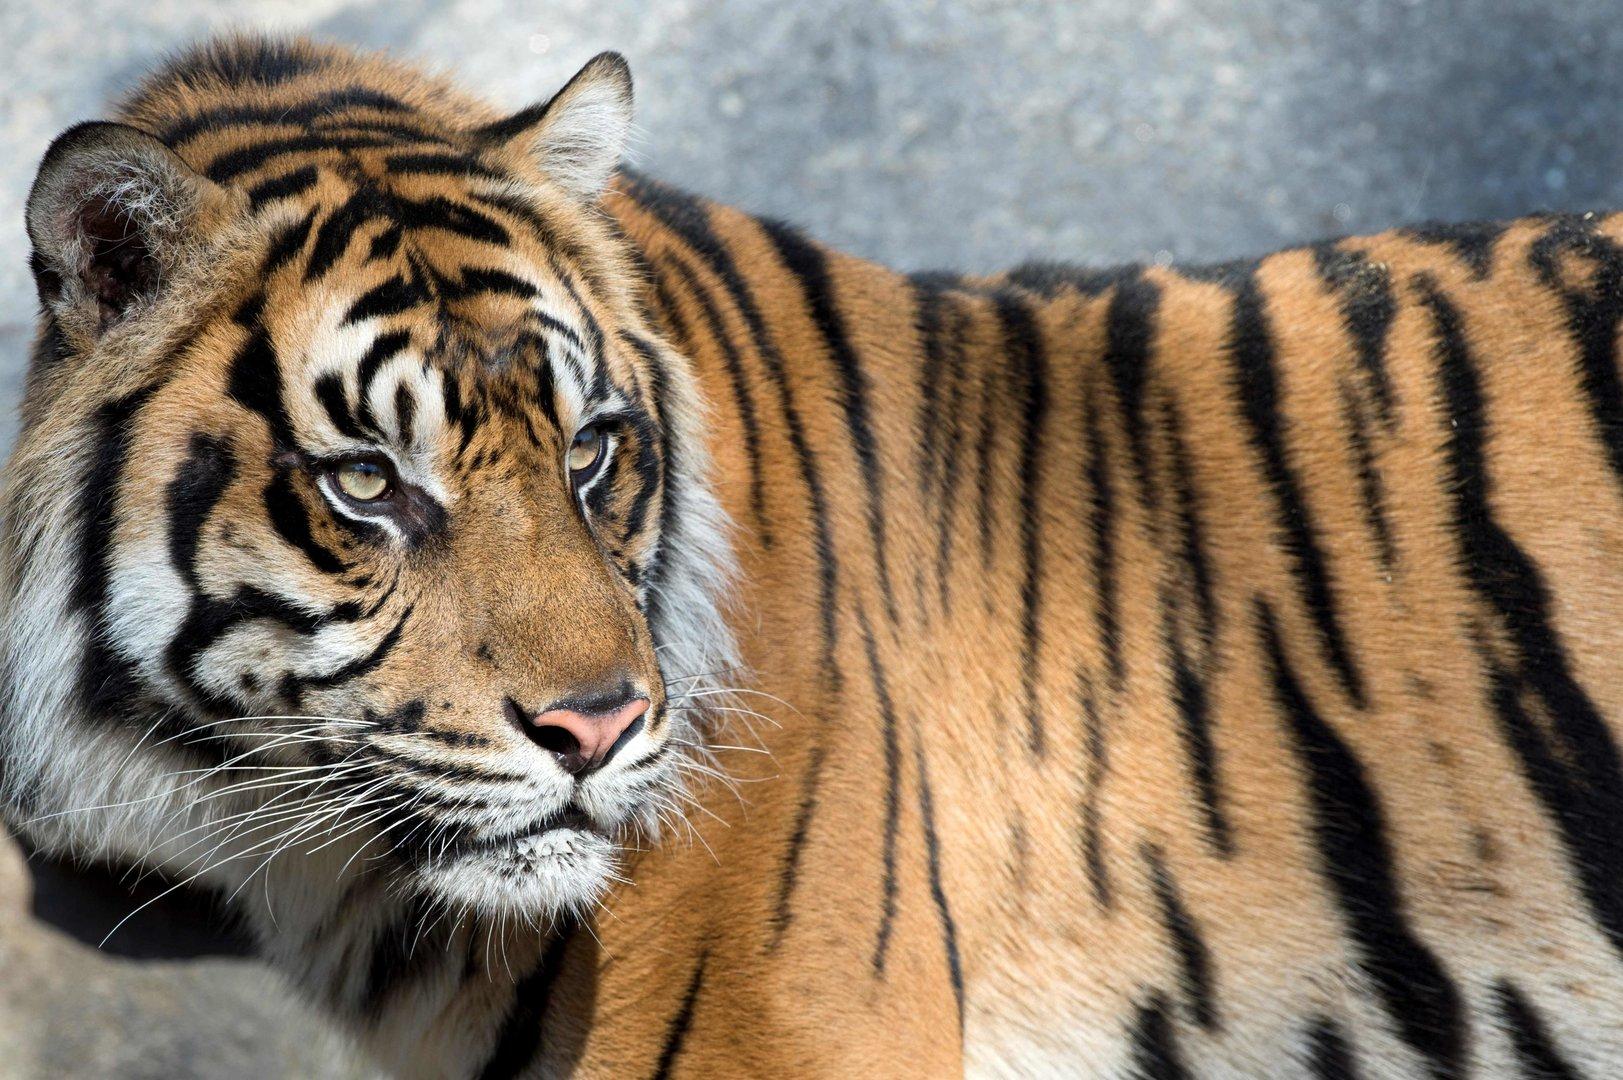 Tiger, Löwen, Jaguar und Bär brachen aus deutschem Zoo aus